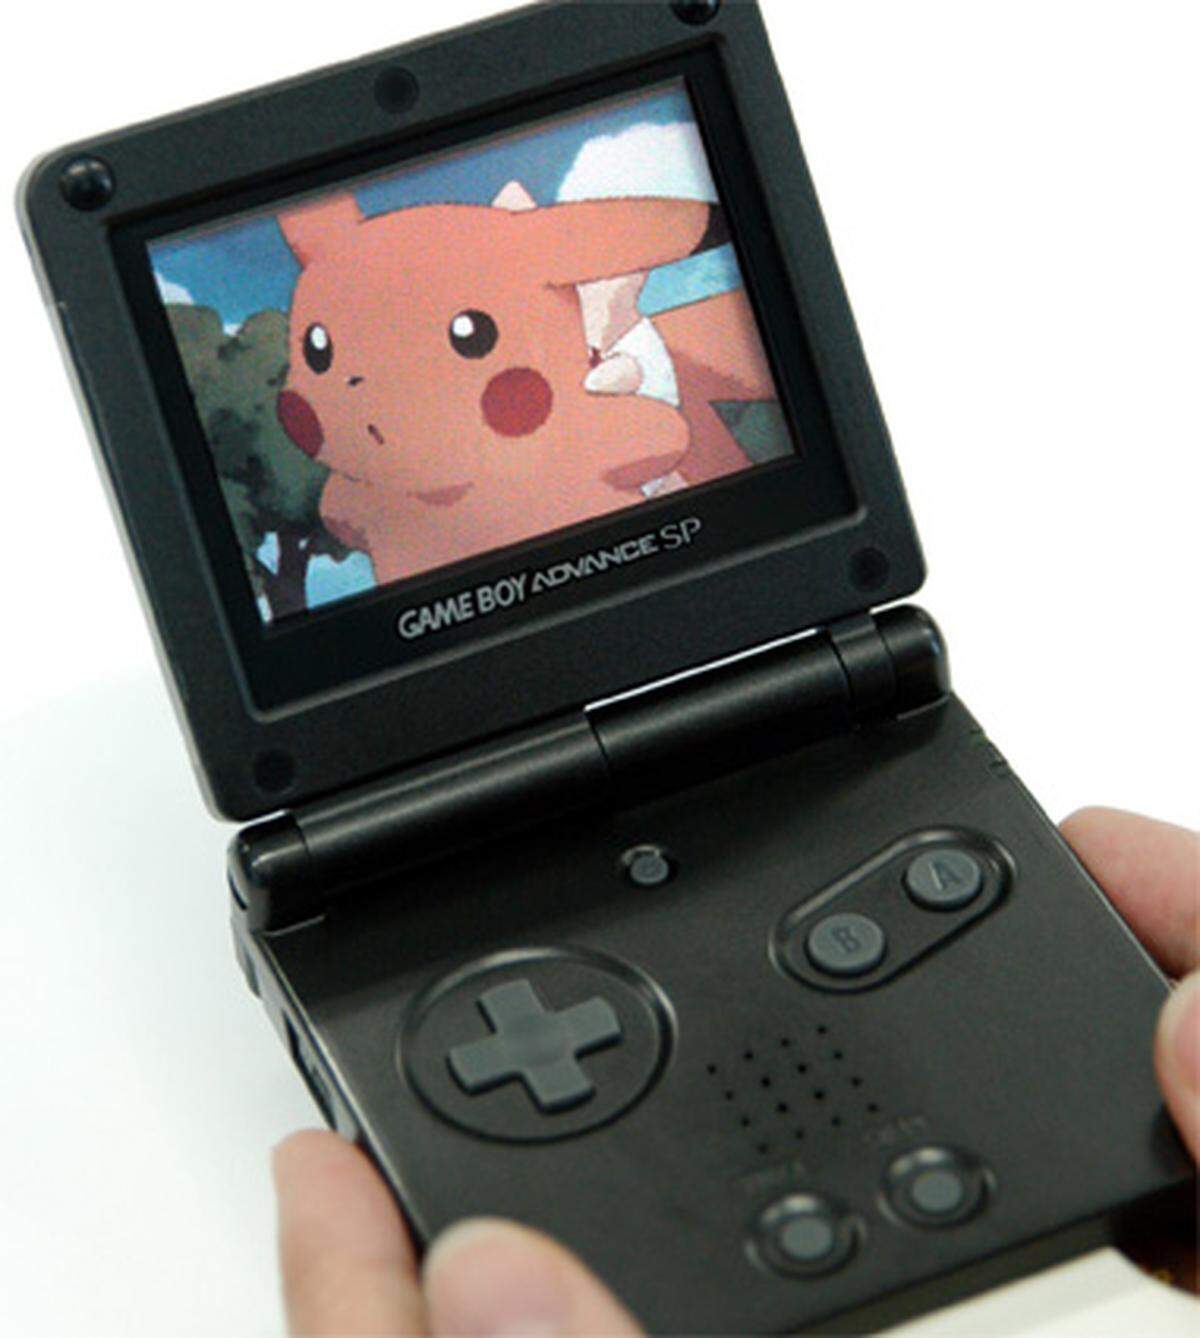 Der "Game Boy Advance SP" (GBA SP) entspricht weitgehend dem GBA, allerdings wurde das Gehäuse komplett umgestaltet und eine Hintergrundbeleuchtung für das neue Display hinzugefügt. Dank einer Klappfunktion konnte das Display beim Transport geschützt werden.